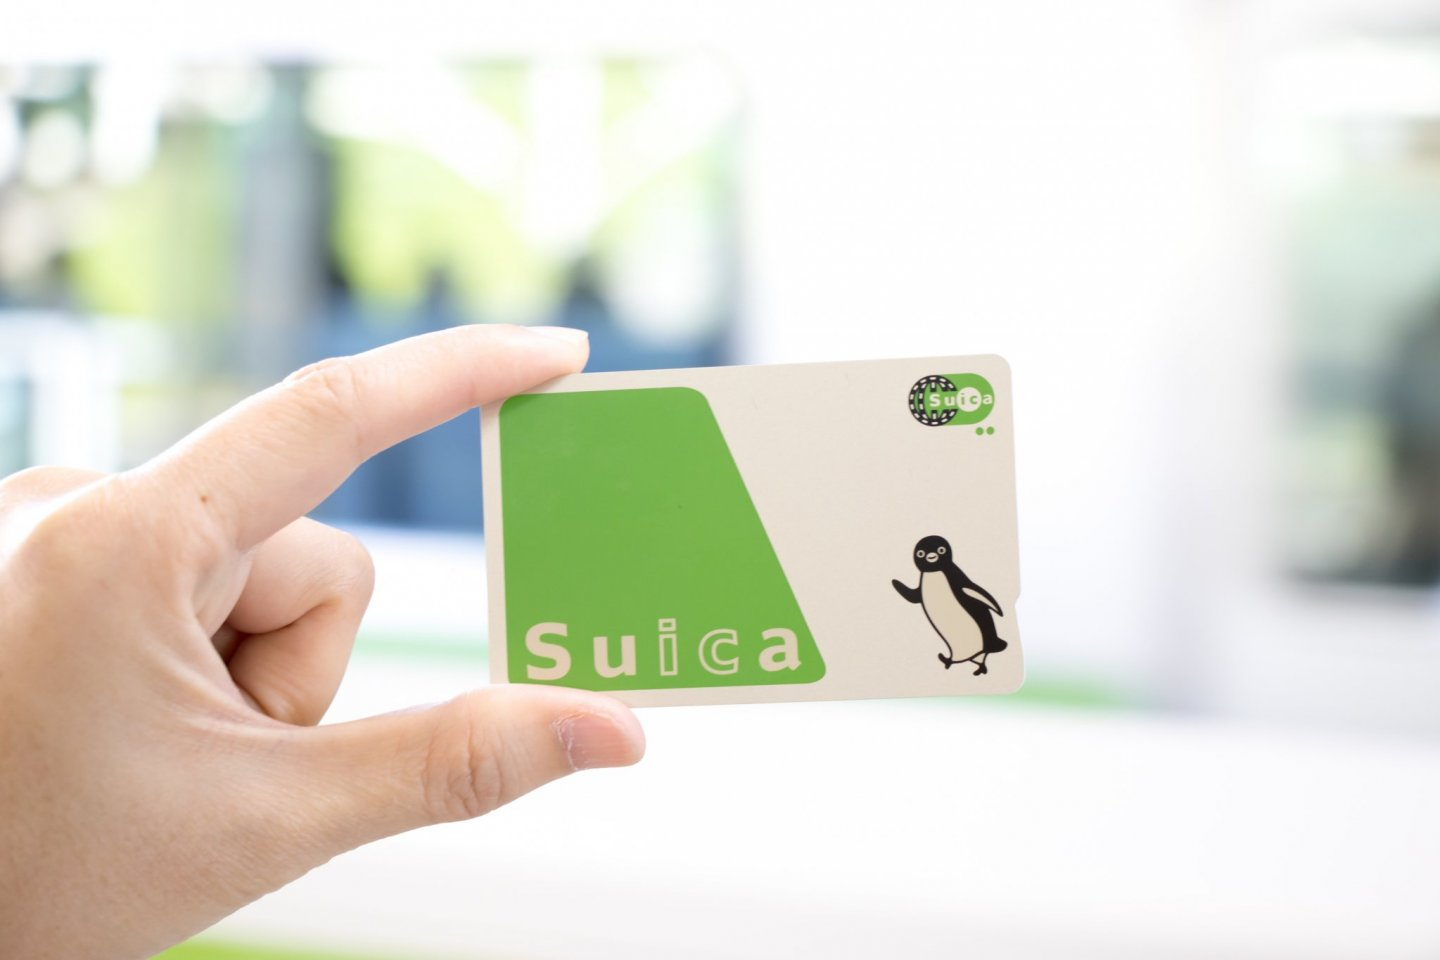 คุณมีบัตร Suica รึยัง?